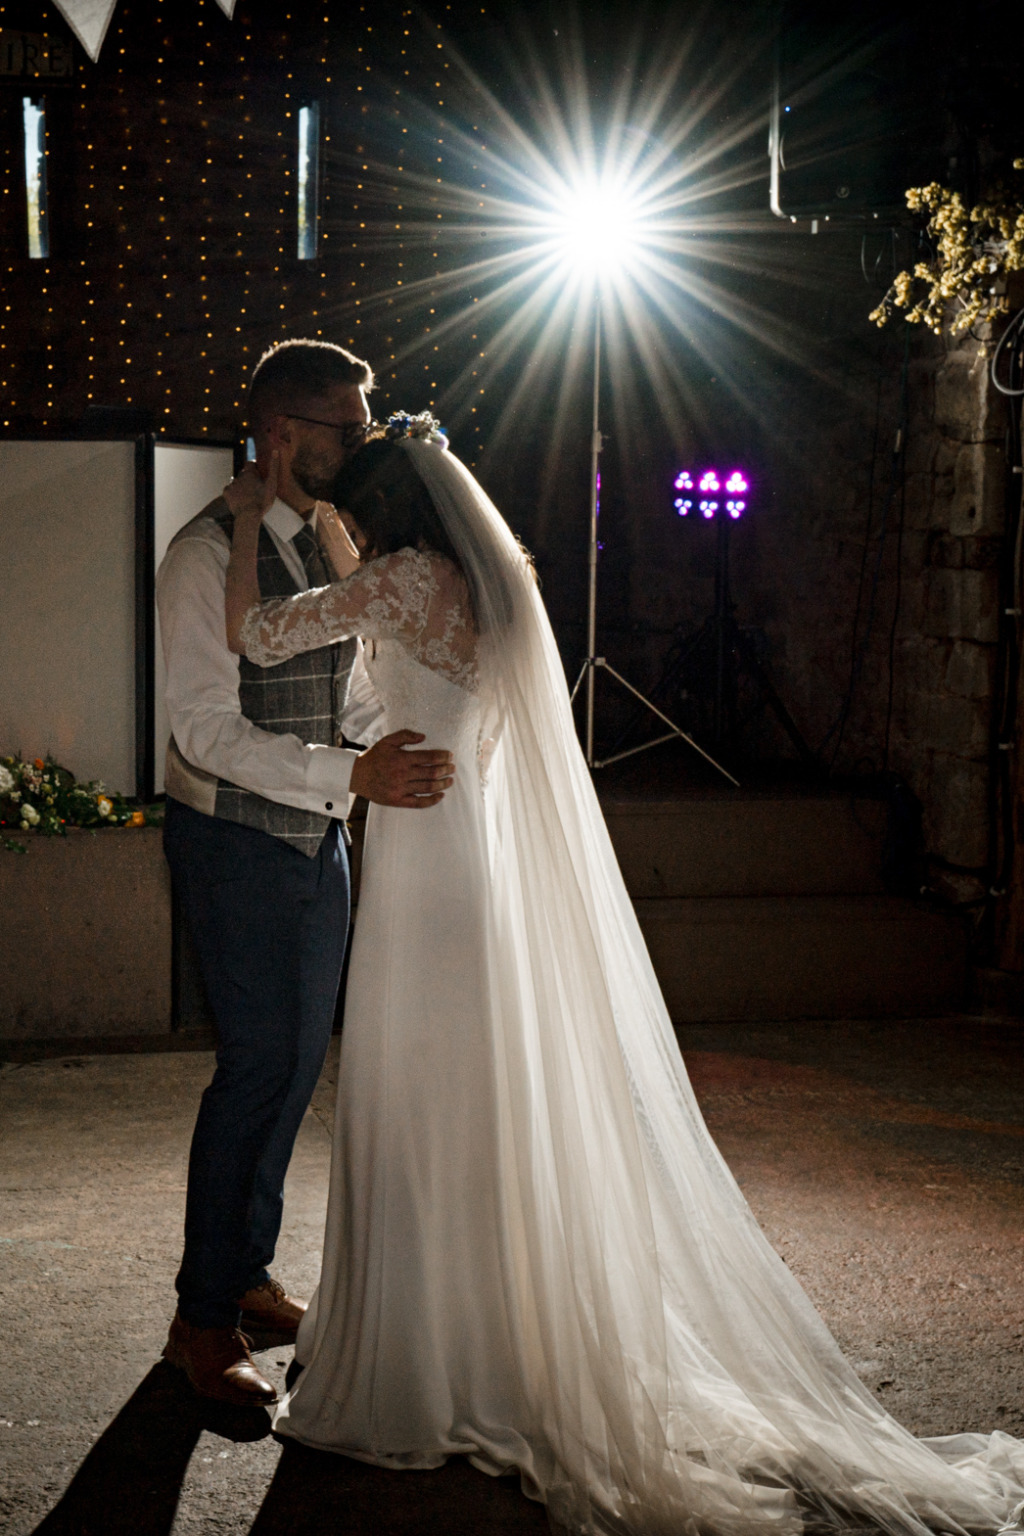 Bride and groom spotlight dancing on the dancefloor